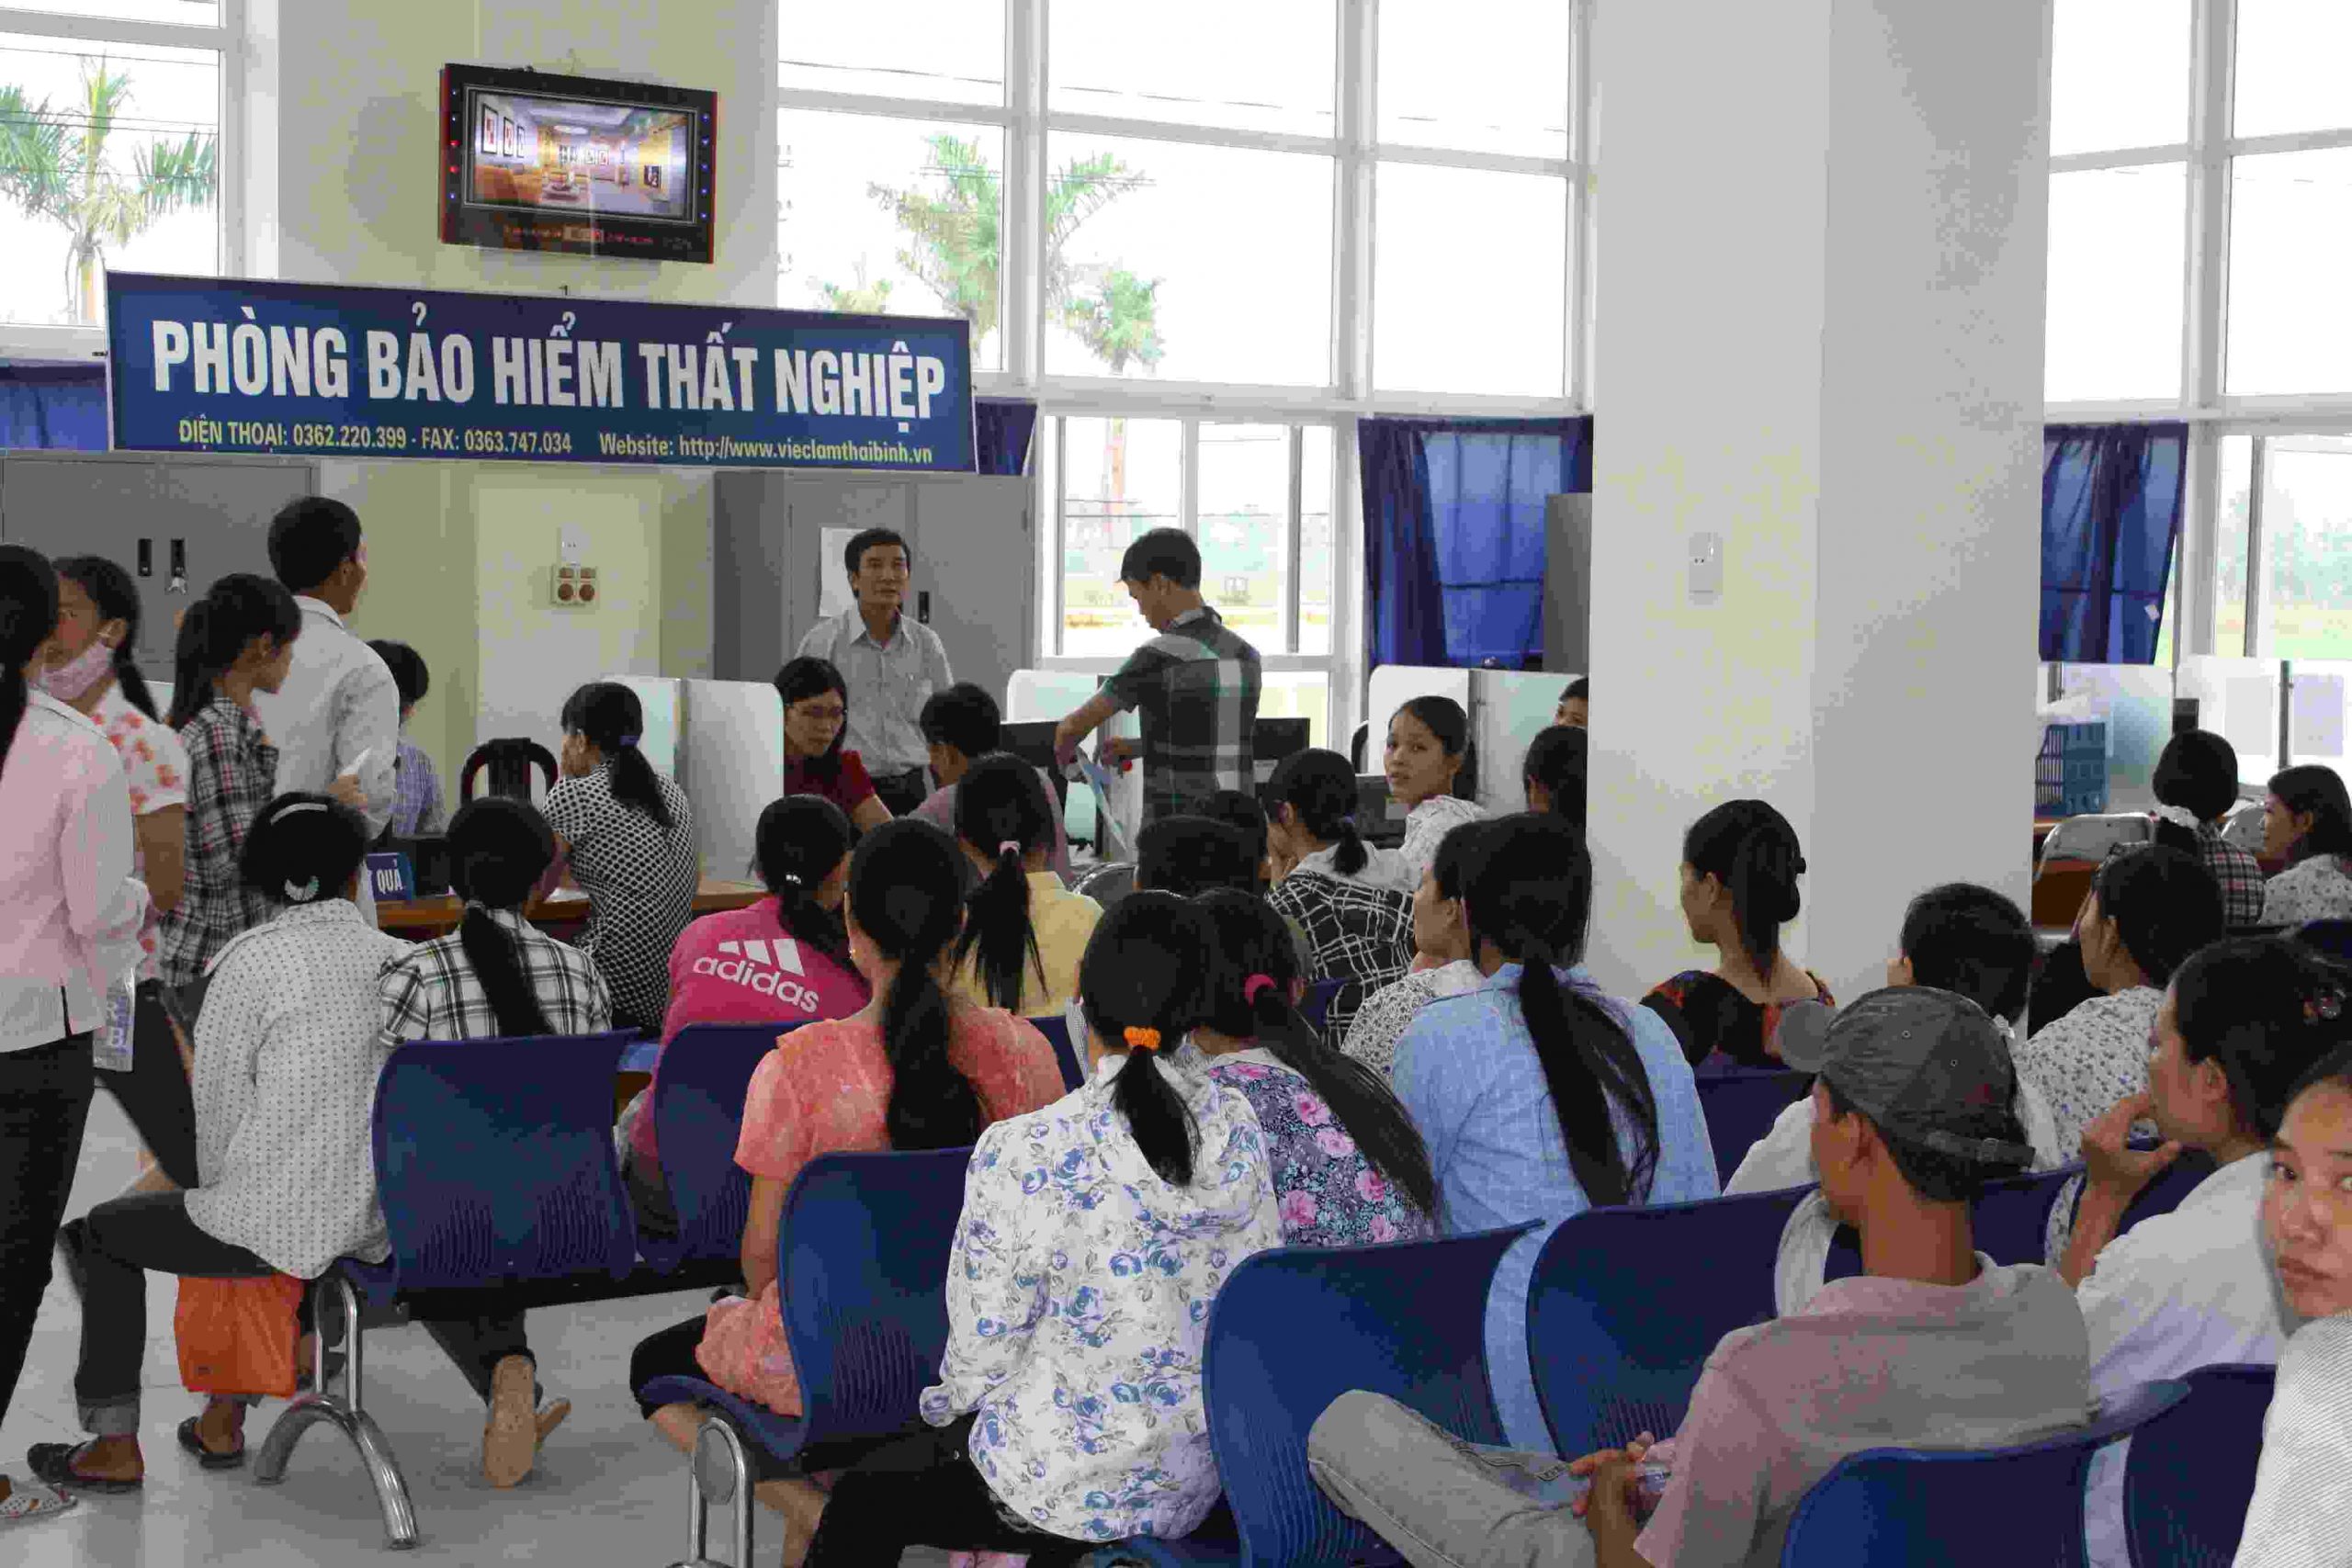 Trung tâm dịch vụ việc làm tỉnh Bình Thuận